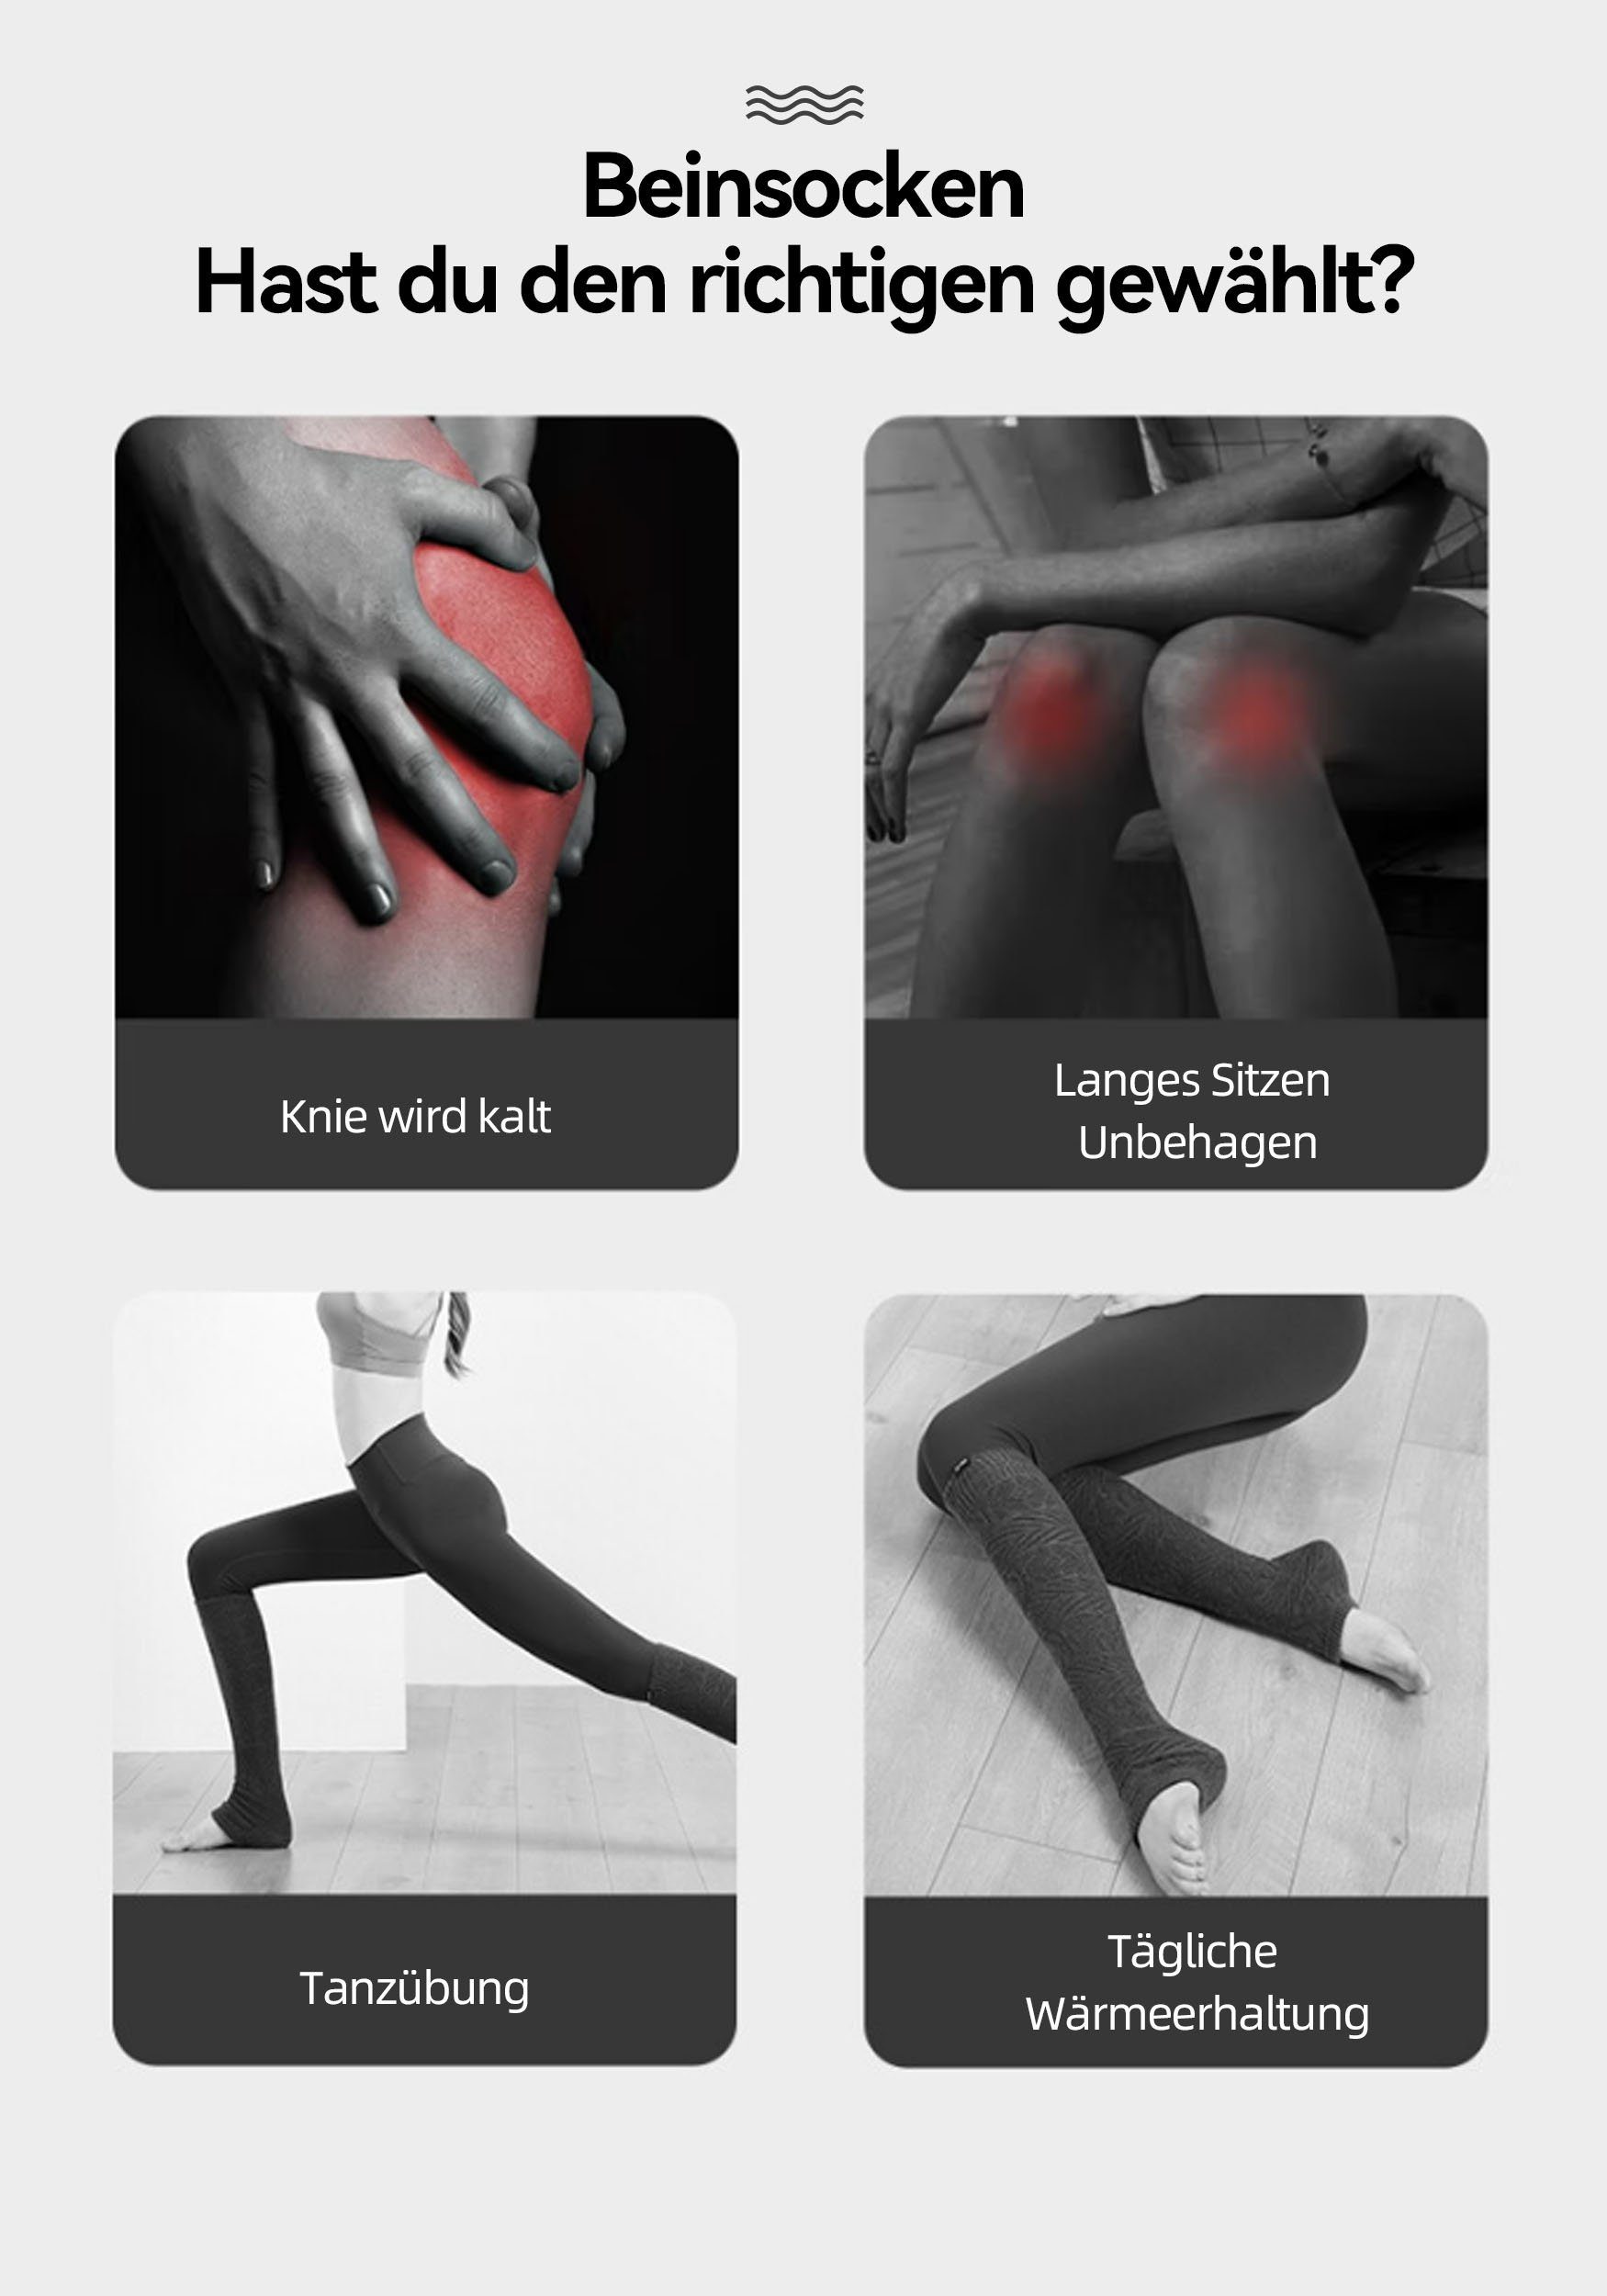 über Rot (1-Paar) für Damen Kniestrümpfe Stretch-Stricksocken Ballett, MAGICSHE Knie Lange Beinstulpen